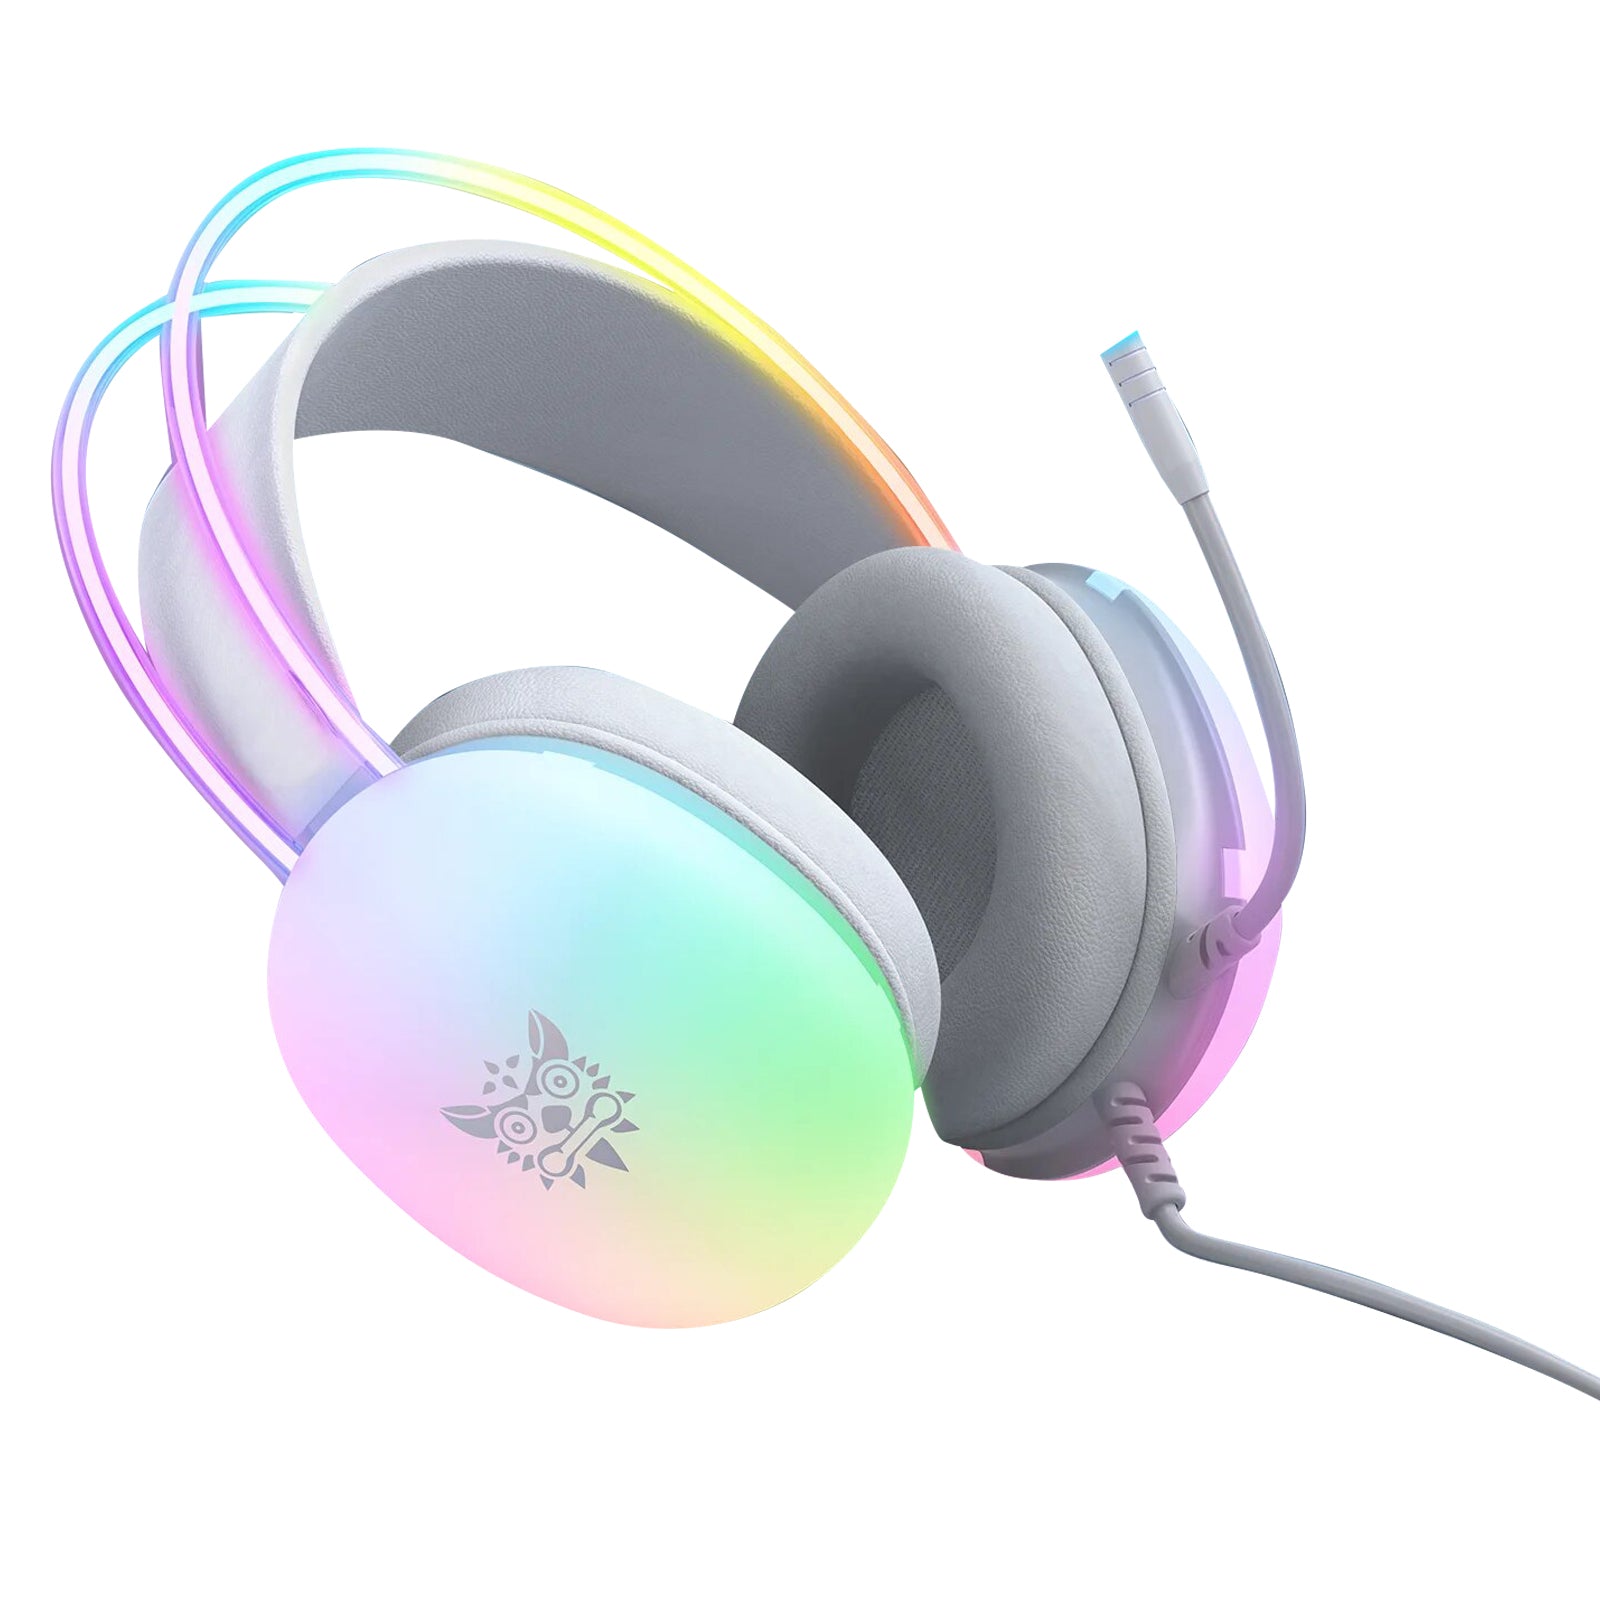 Premium Professional Gaming-Headset/Kopfhörer: Voll-RGB für PC & Laptop, Ideal für Gamer, RGB-Beleuchtung, Limitierte Auflage